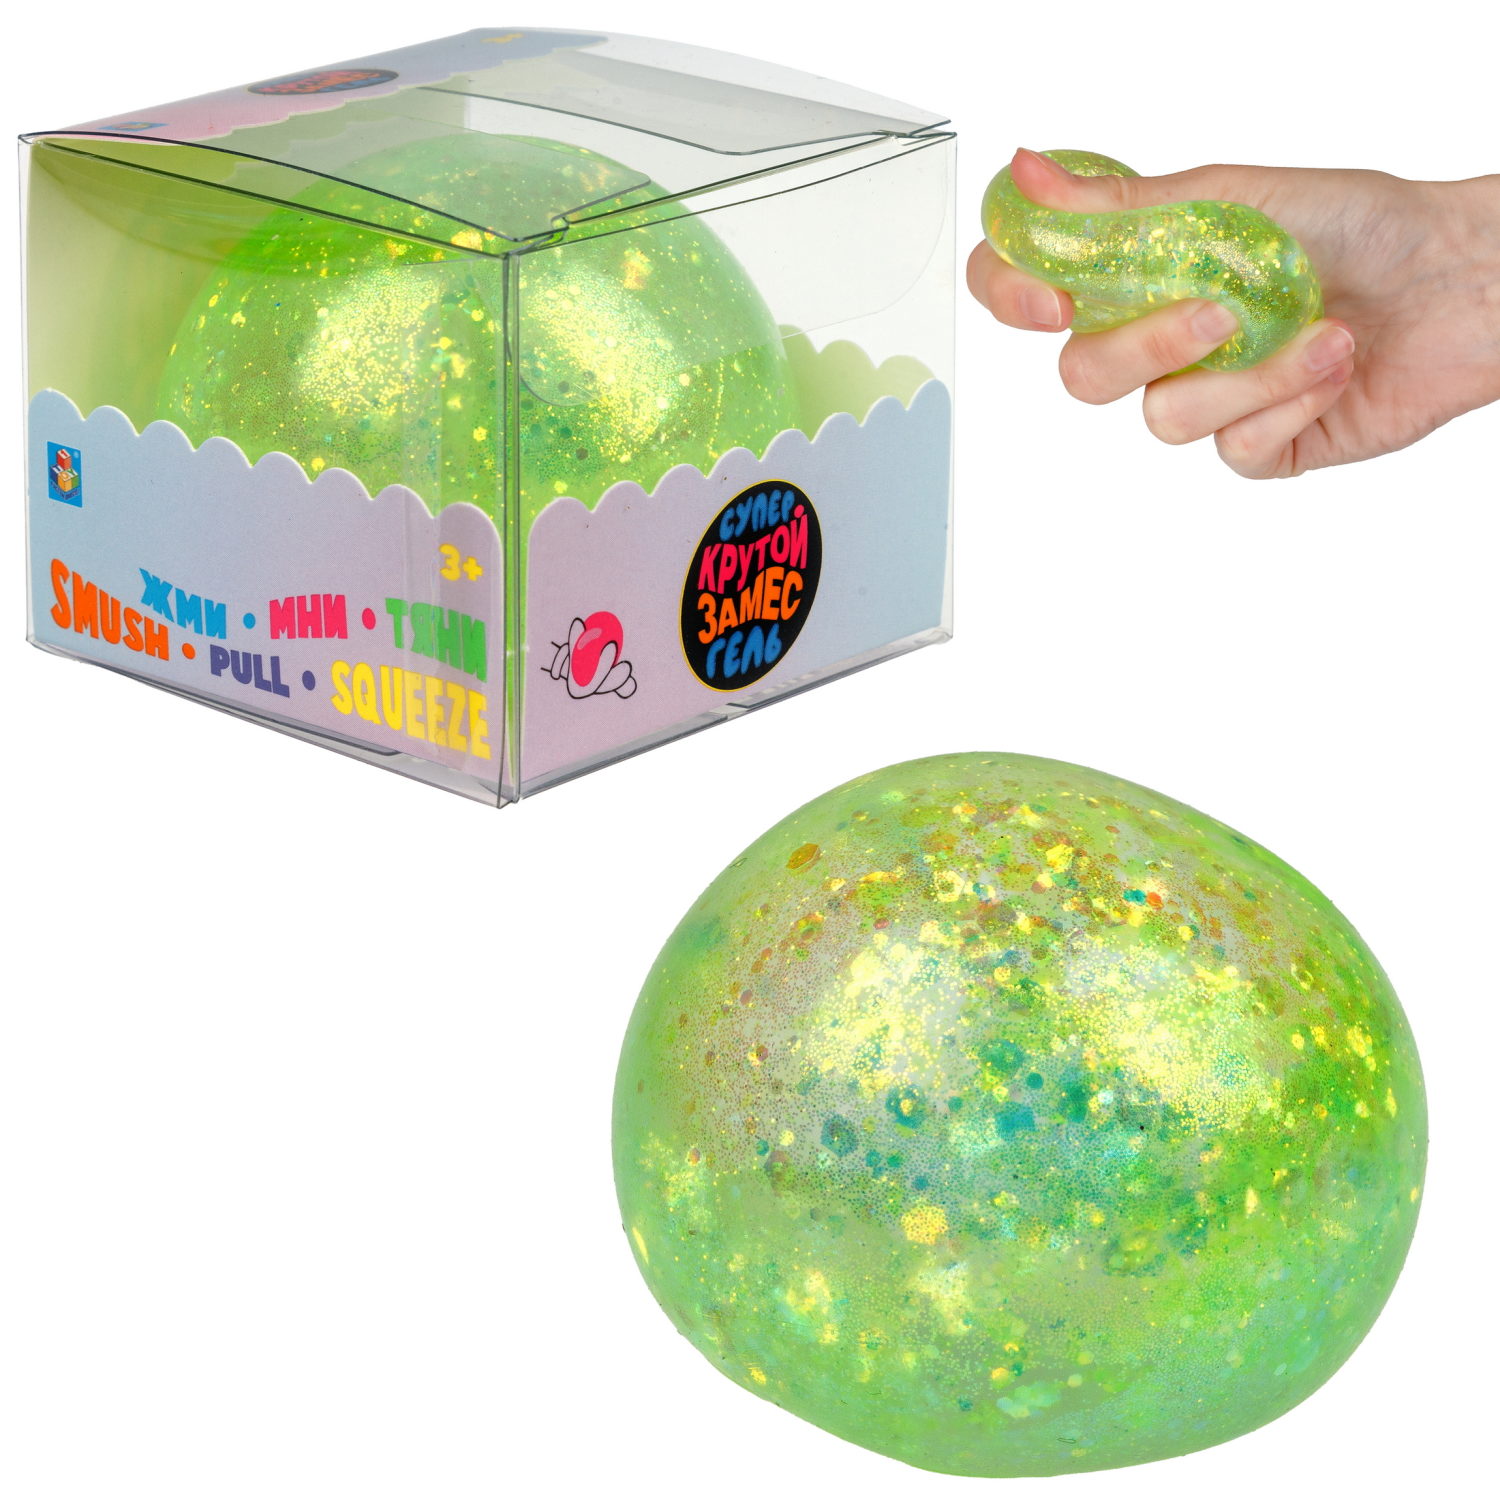 Игрушка-антистресс 1toy Крутой замес Супергель зелёный шар блестки 6см 1toy игрушка для пускания мыльных пузырей зелёный крокодил